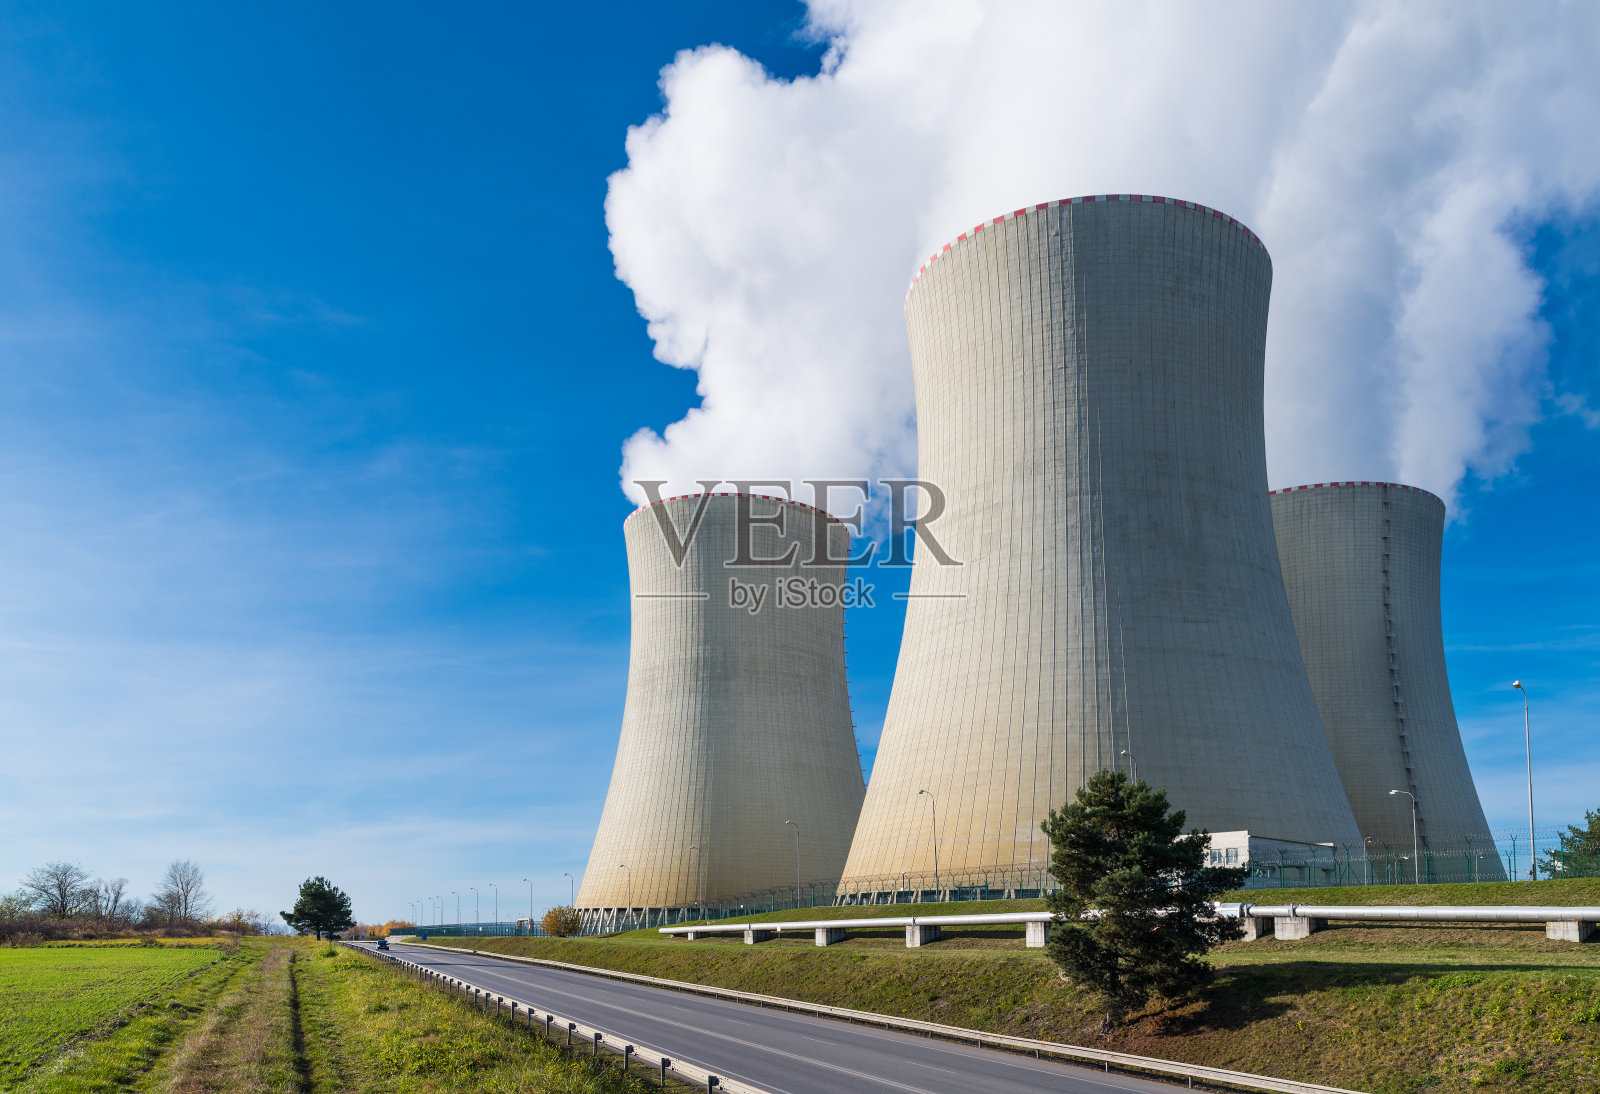 核电站双曲面冷却塔与水蒸汽羽状物在蓝天背景照片摄影图片